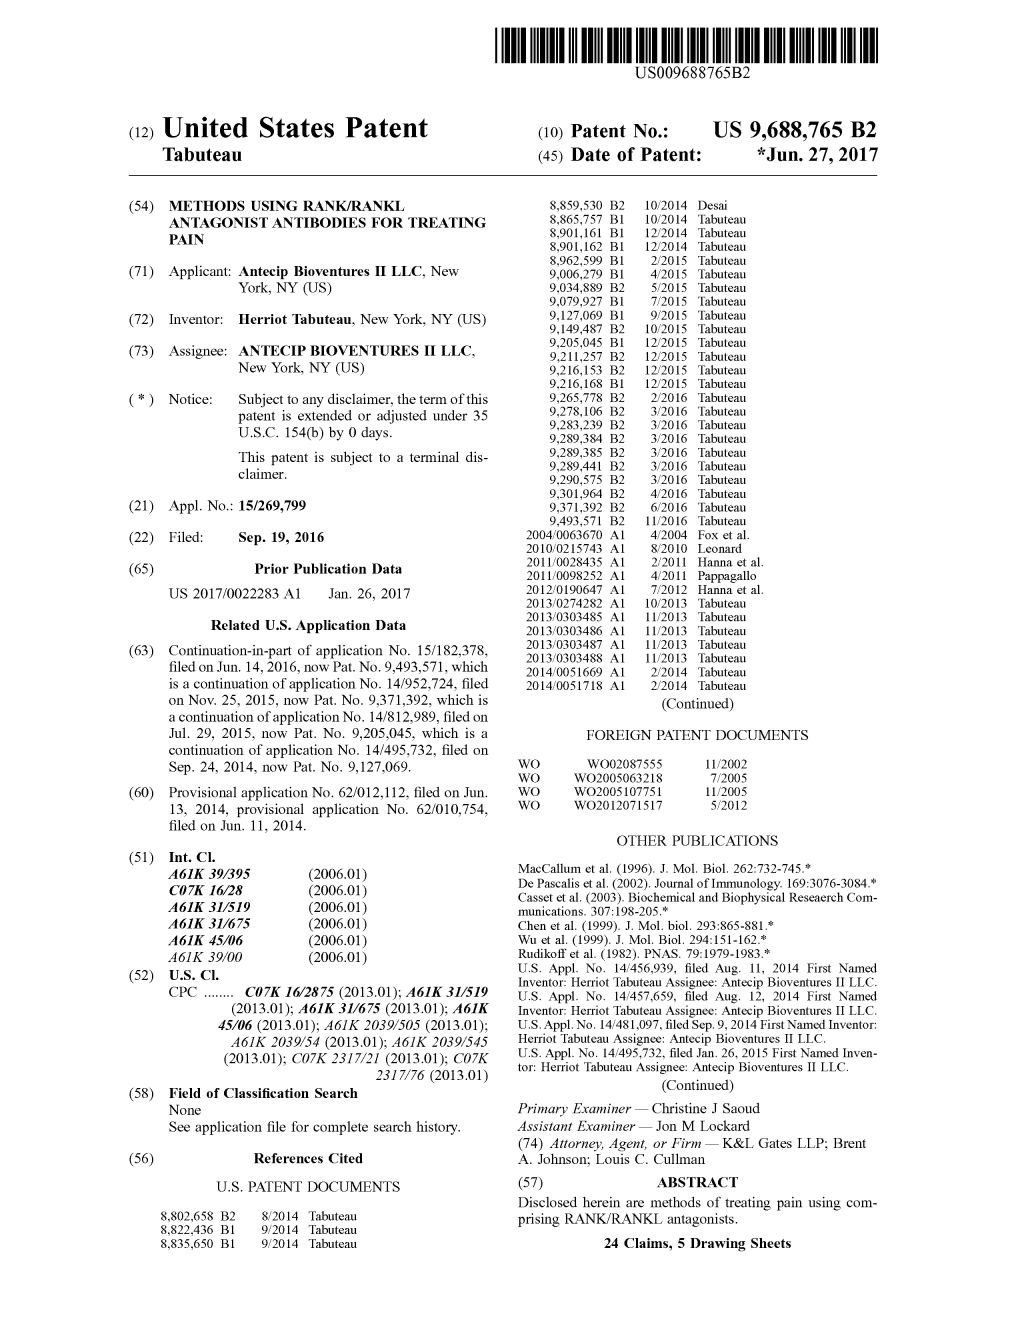 United States Patent (10) Patent No.: US 9,688,765 B2 Tabuteau (45) Date of Patent: *Jun